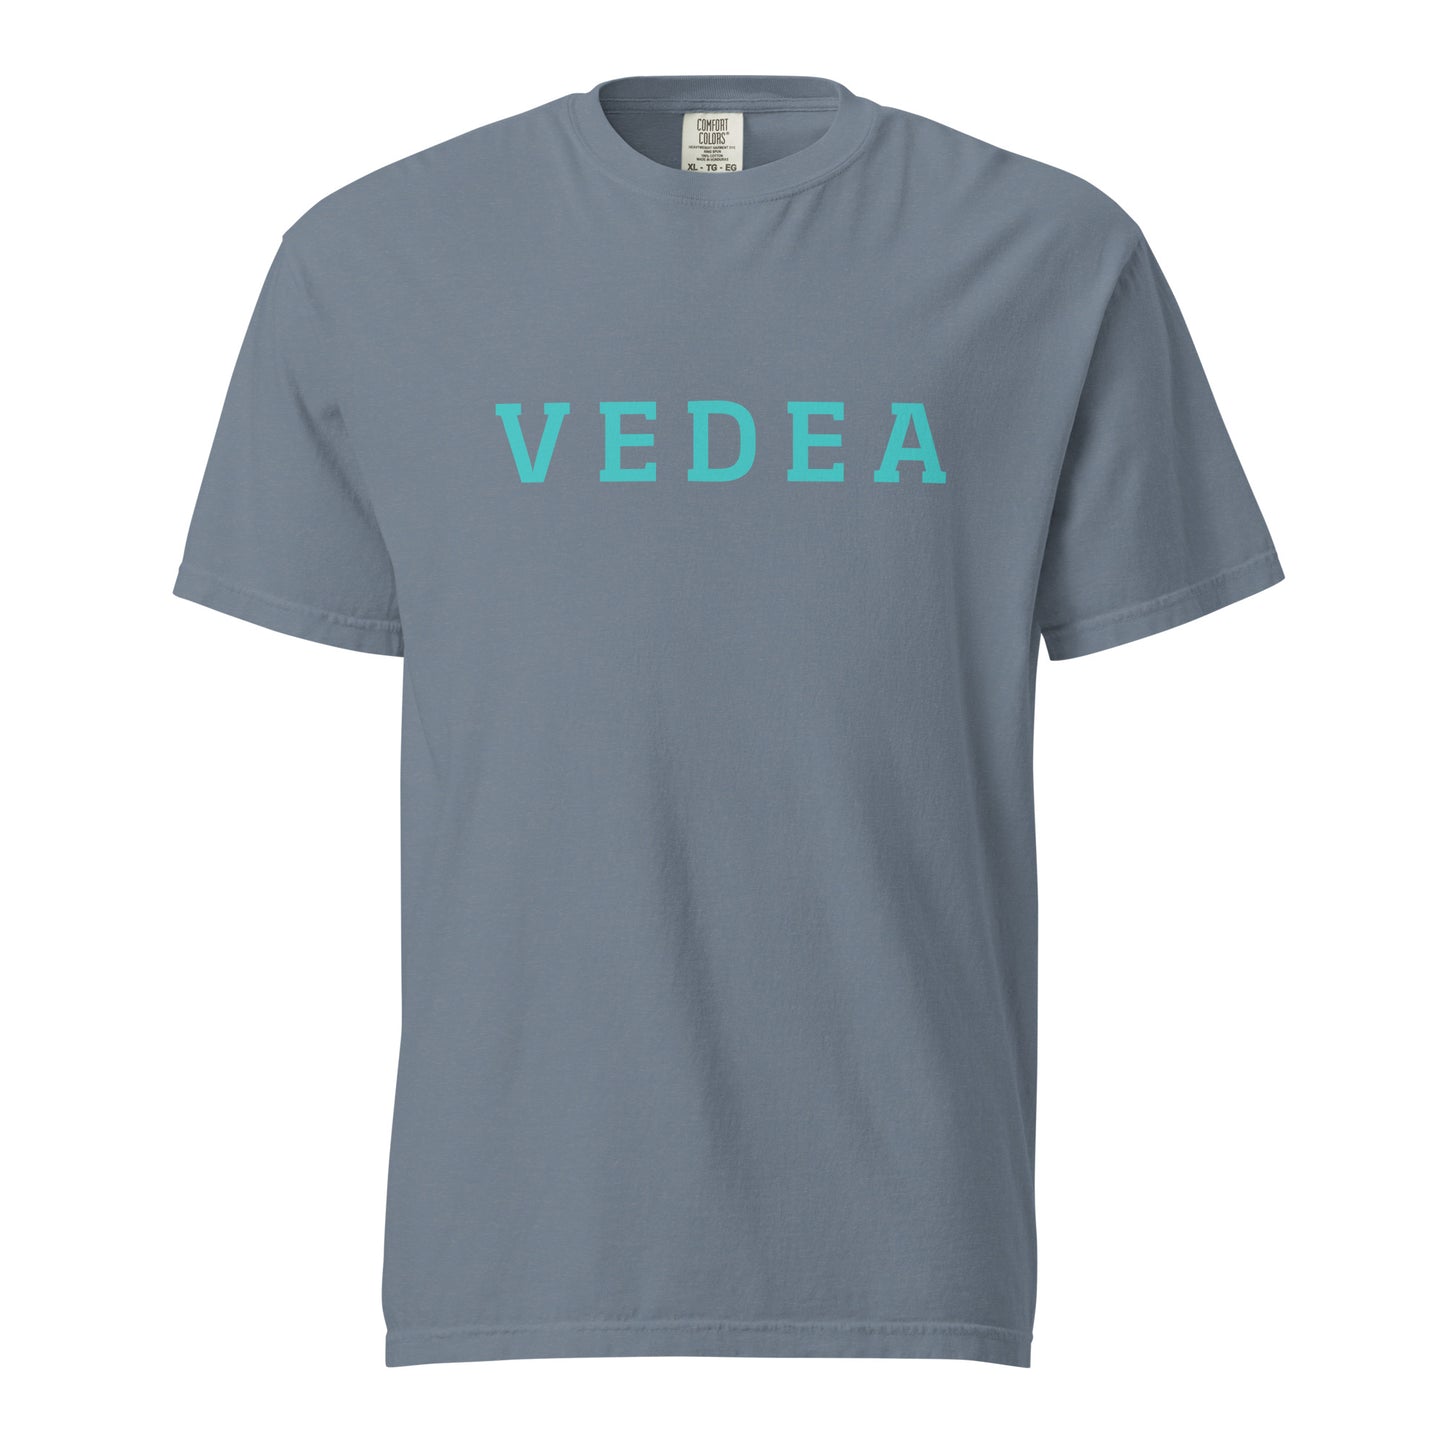 Vedea Original Unisex Garment-Dyed Heavyweight T-Shirt